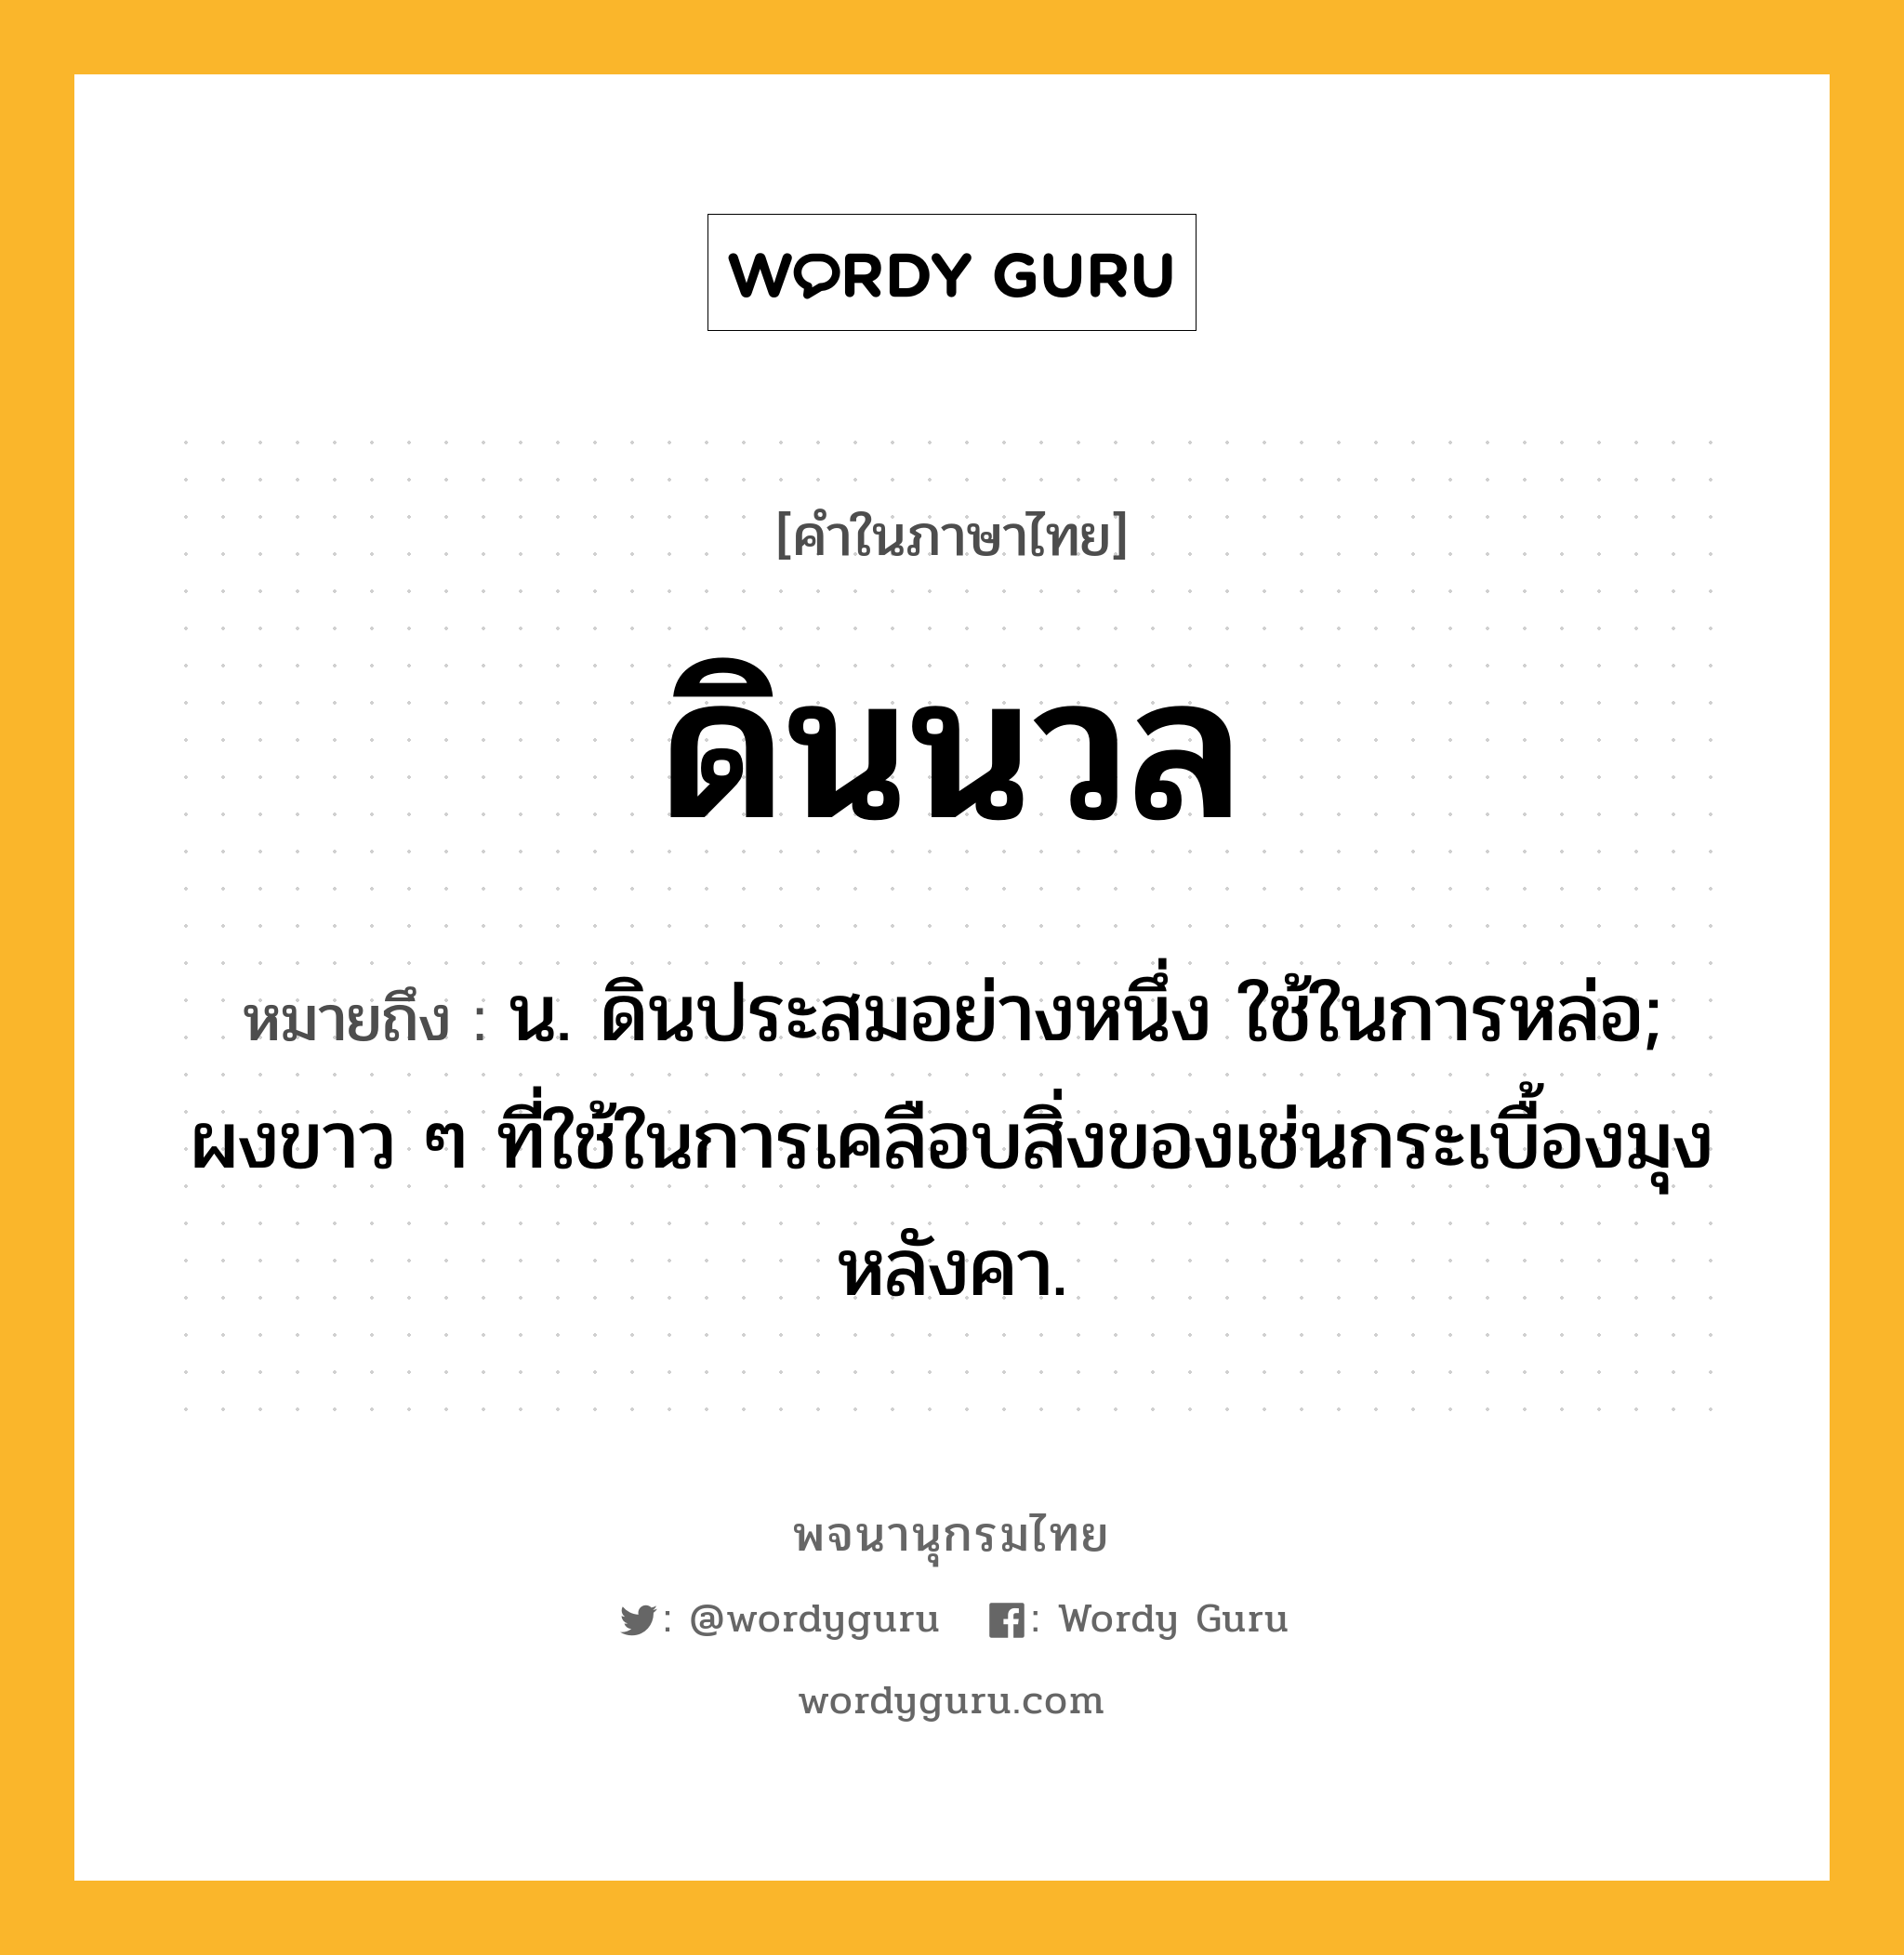 ดินนวล ความหมาย หมายถึงอะไร?, คำในภาษาไทย ดินนวล หมายถึง น. ดินประสมอย่างหนึ่ง ใช้ในการหล่อ; ผงขาว ๆ ที่ใช้ในการเคลือบสิ่งของเช่นกระเบื้องมุงหลังคา.